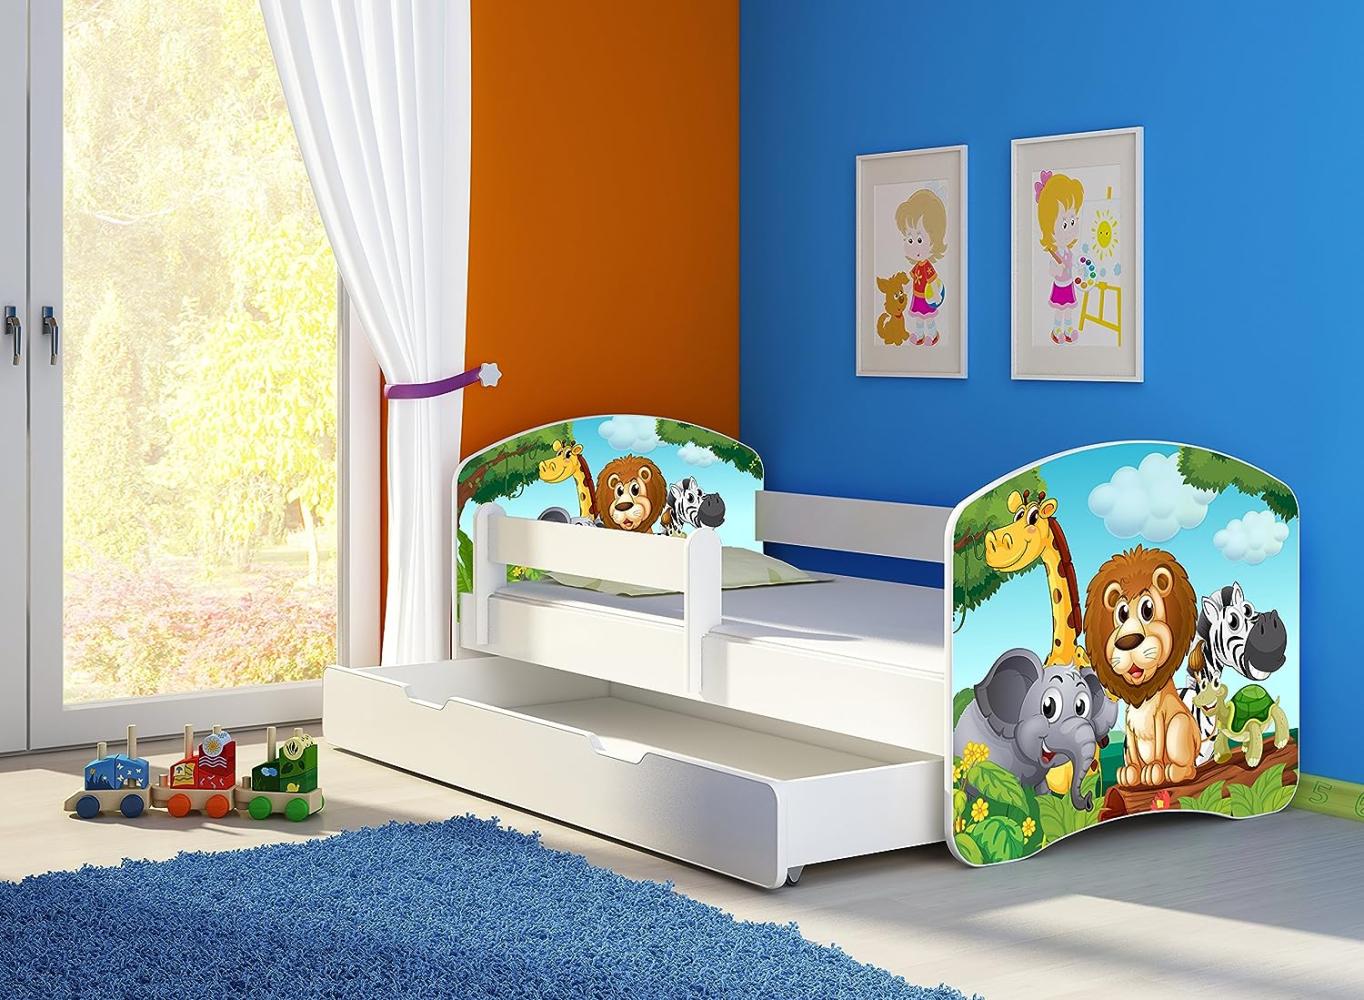 Clamaro 'Fantasia' Kinderbett 'Animals' 70 x 140 cm inkl. Bettkasten, Rausfallschutz, Matratze und Lattenrost Bild 1